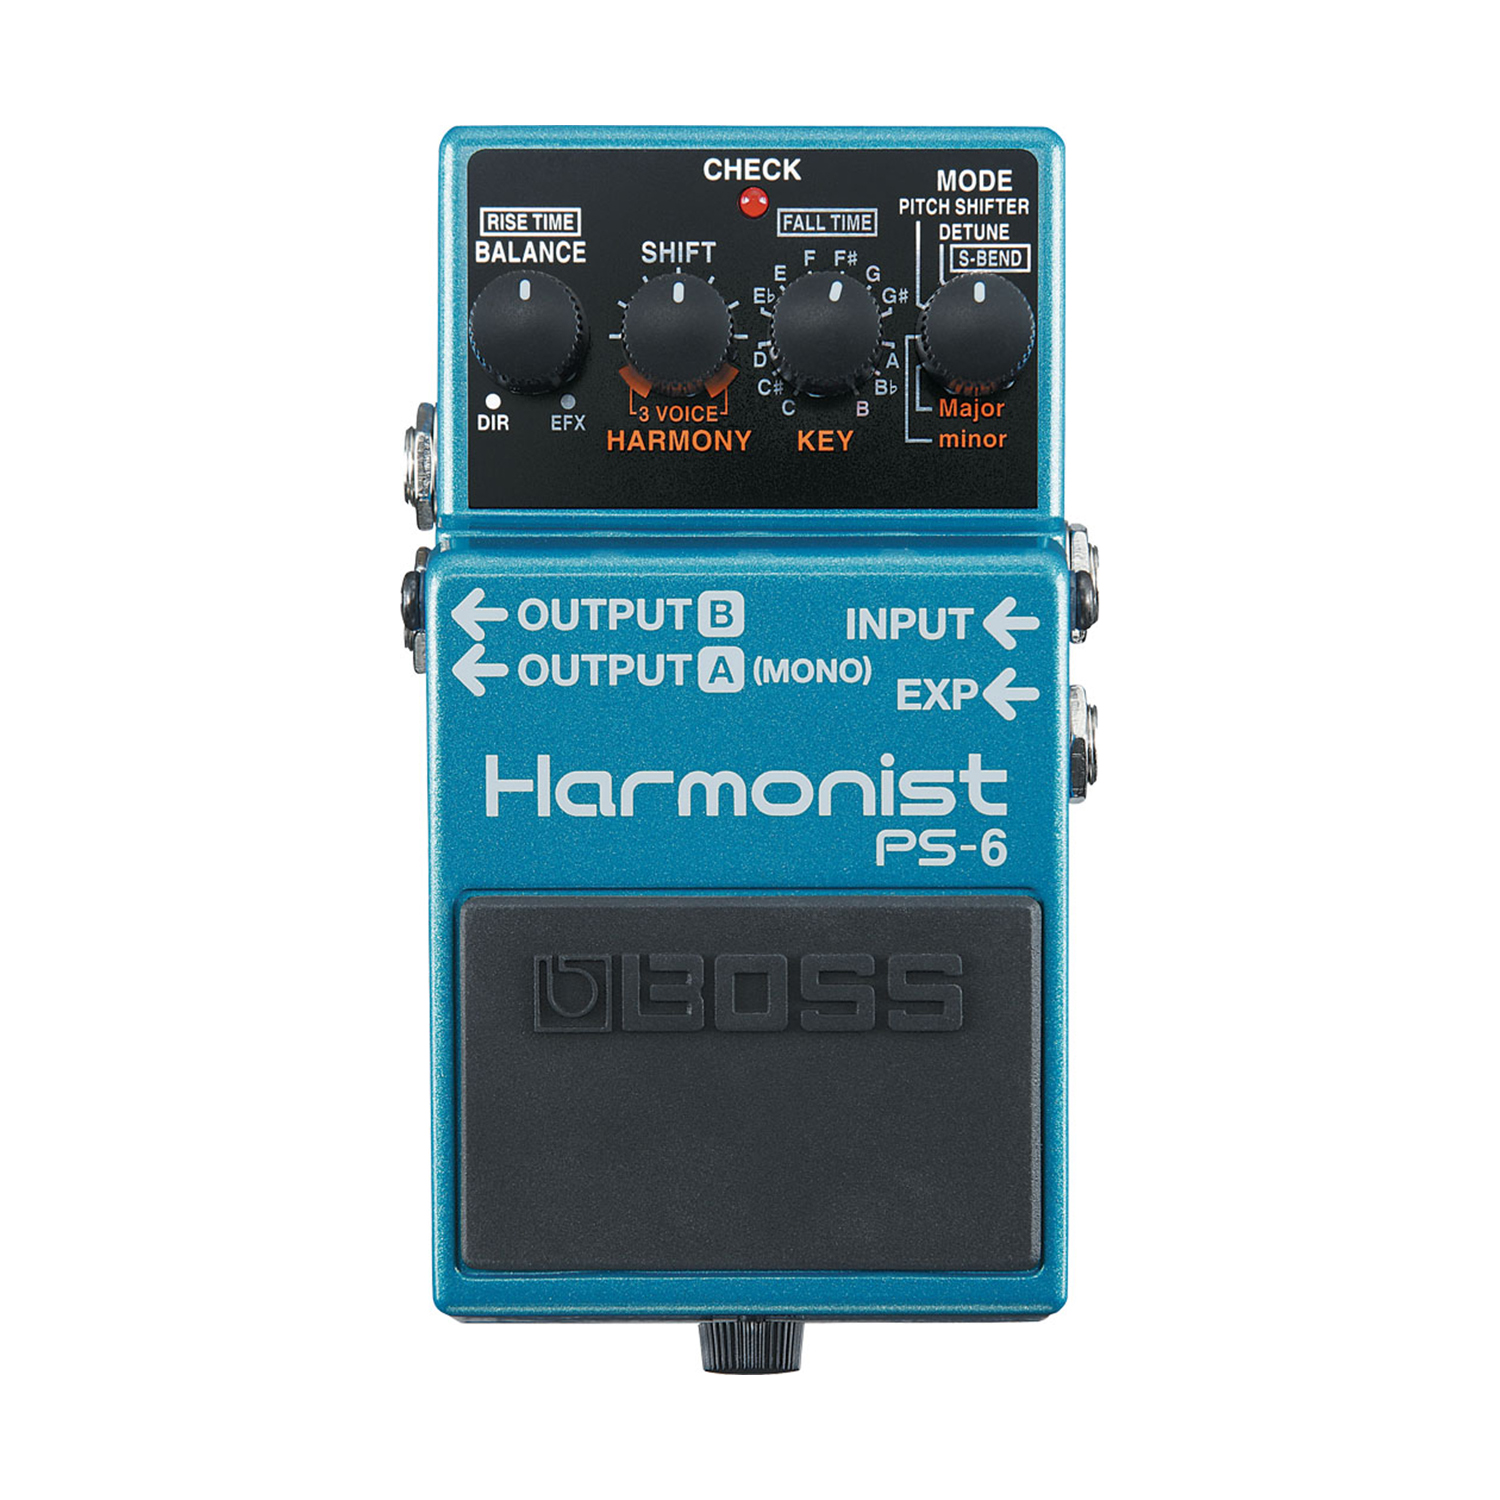 Harmonist PS-6